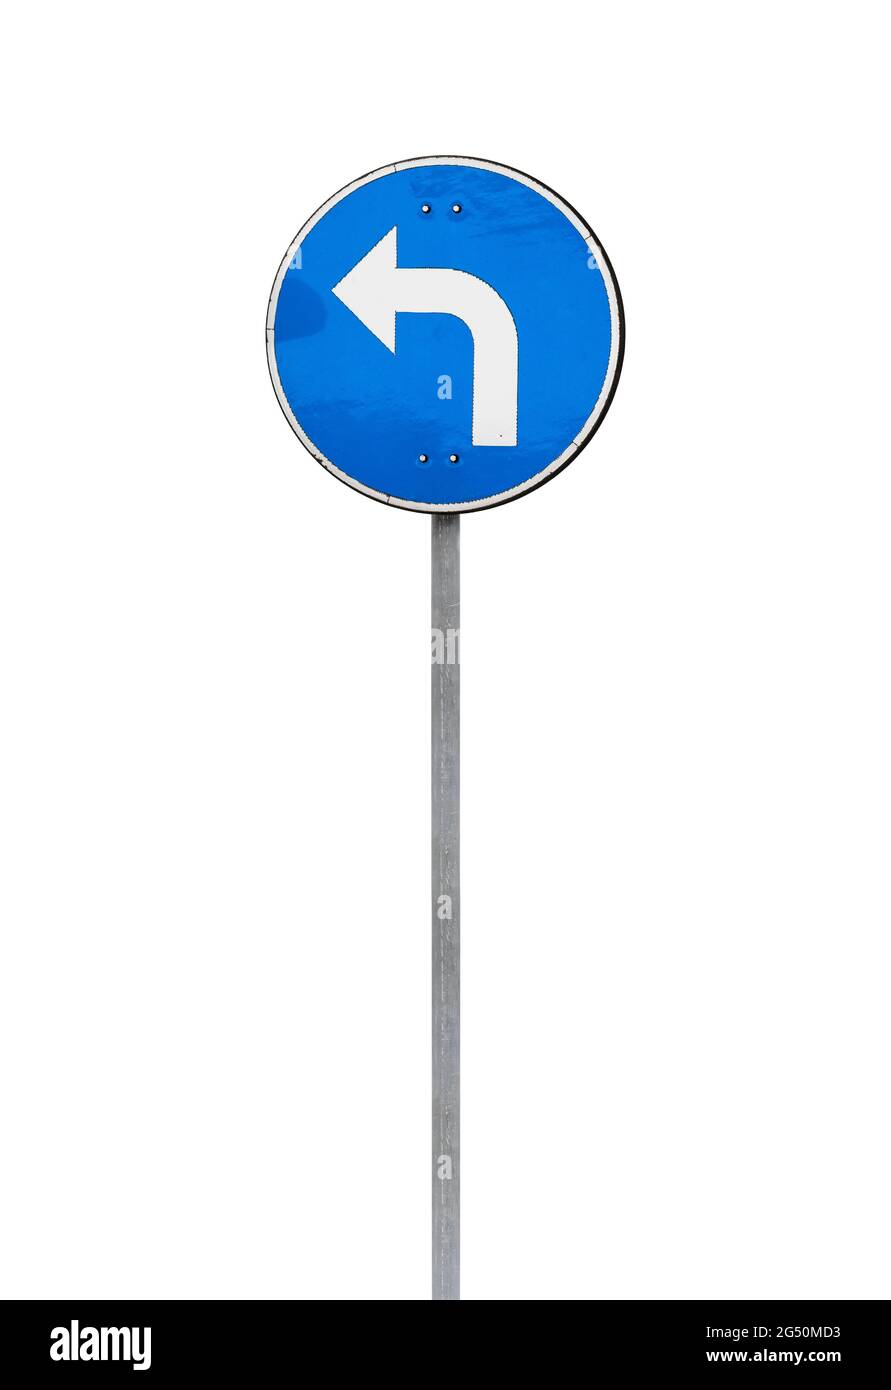 Girare a sinistra, cartello stradale standard europeo su palo verticale in metallo isolato su sfondo bianco Foto Stock